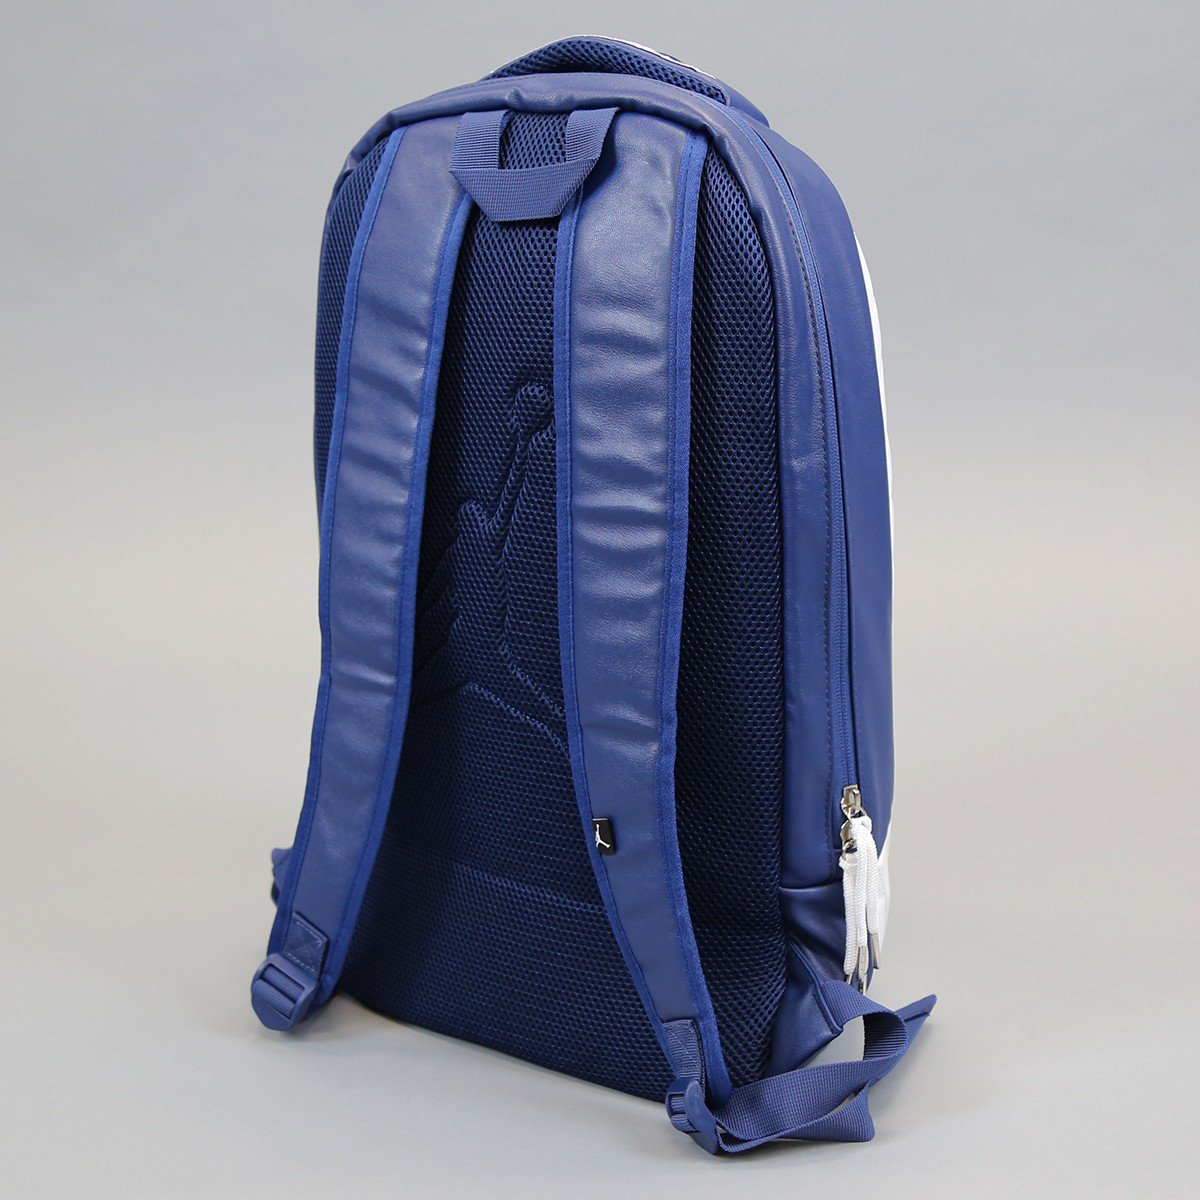 jordan retro 12 backpack french blue